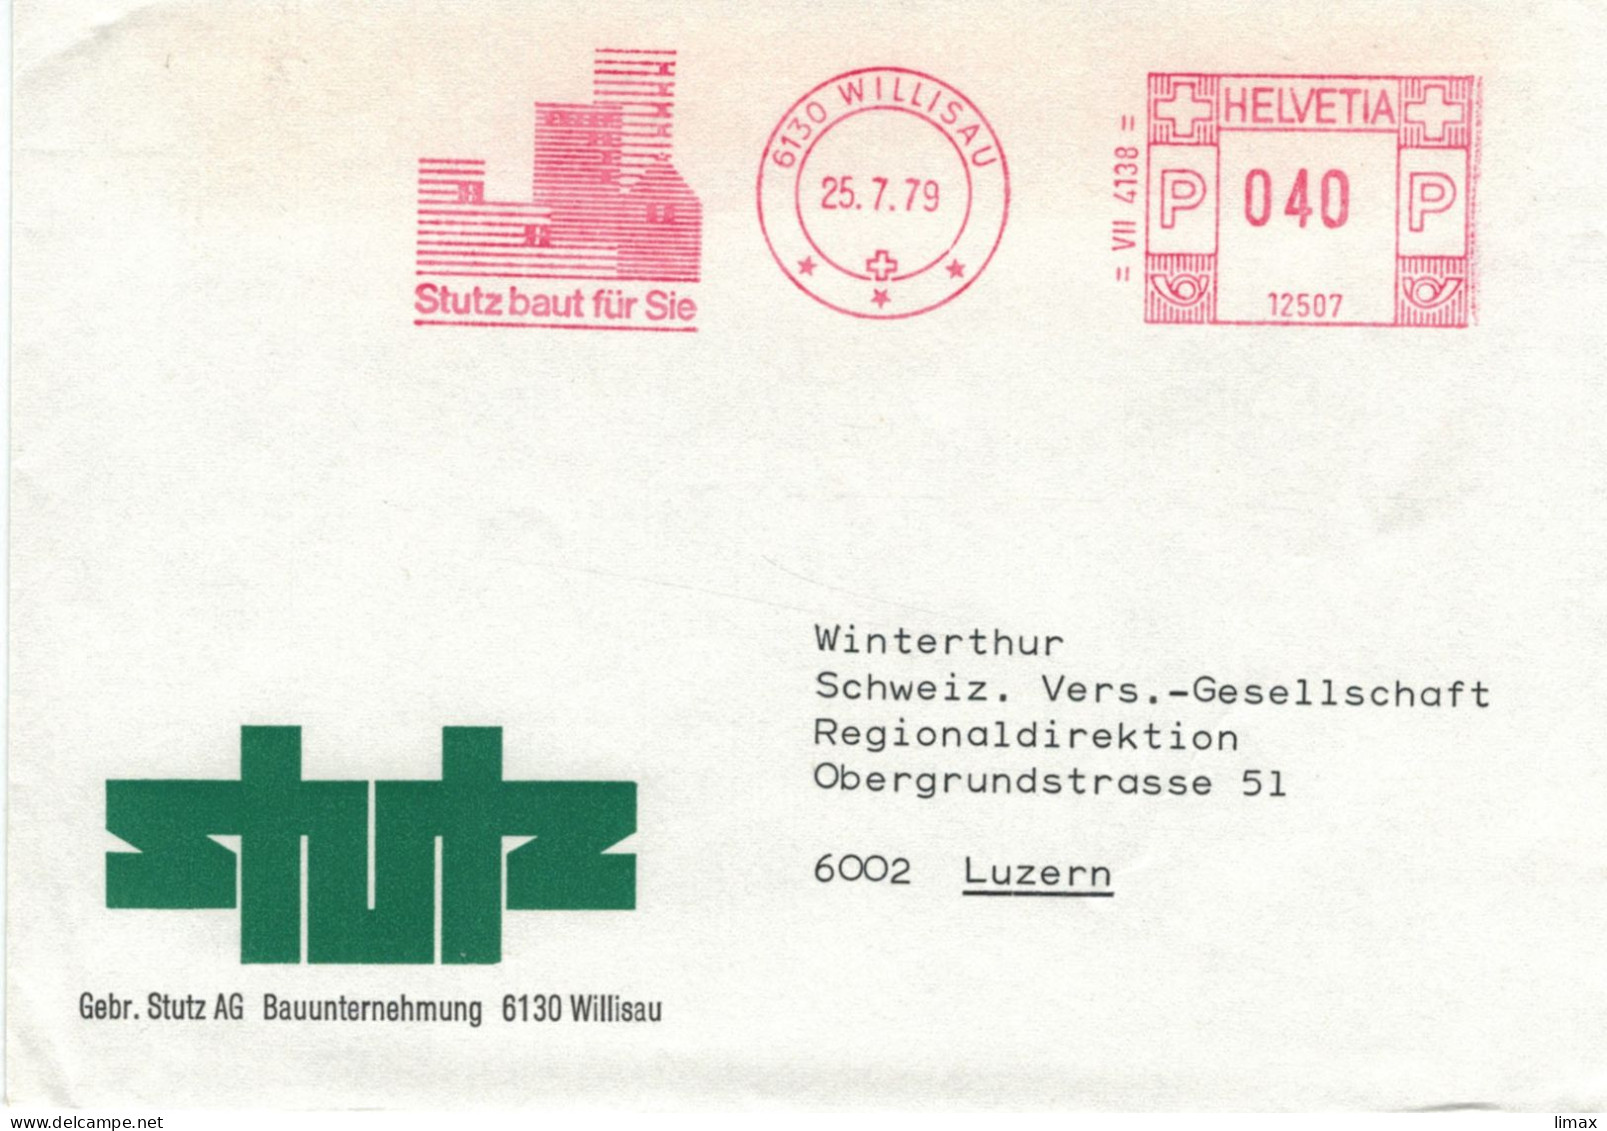 Stutz Bauunternehmung 6130 Willisau 1979 - Stempel 12507 - Postage Meters